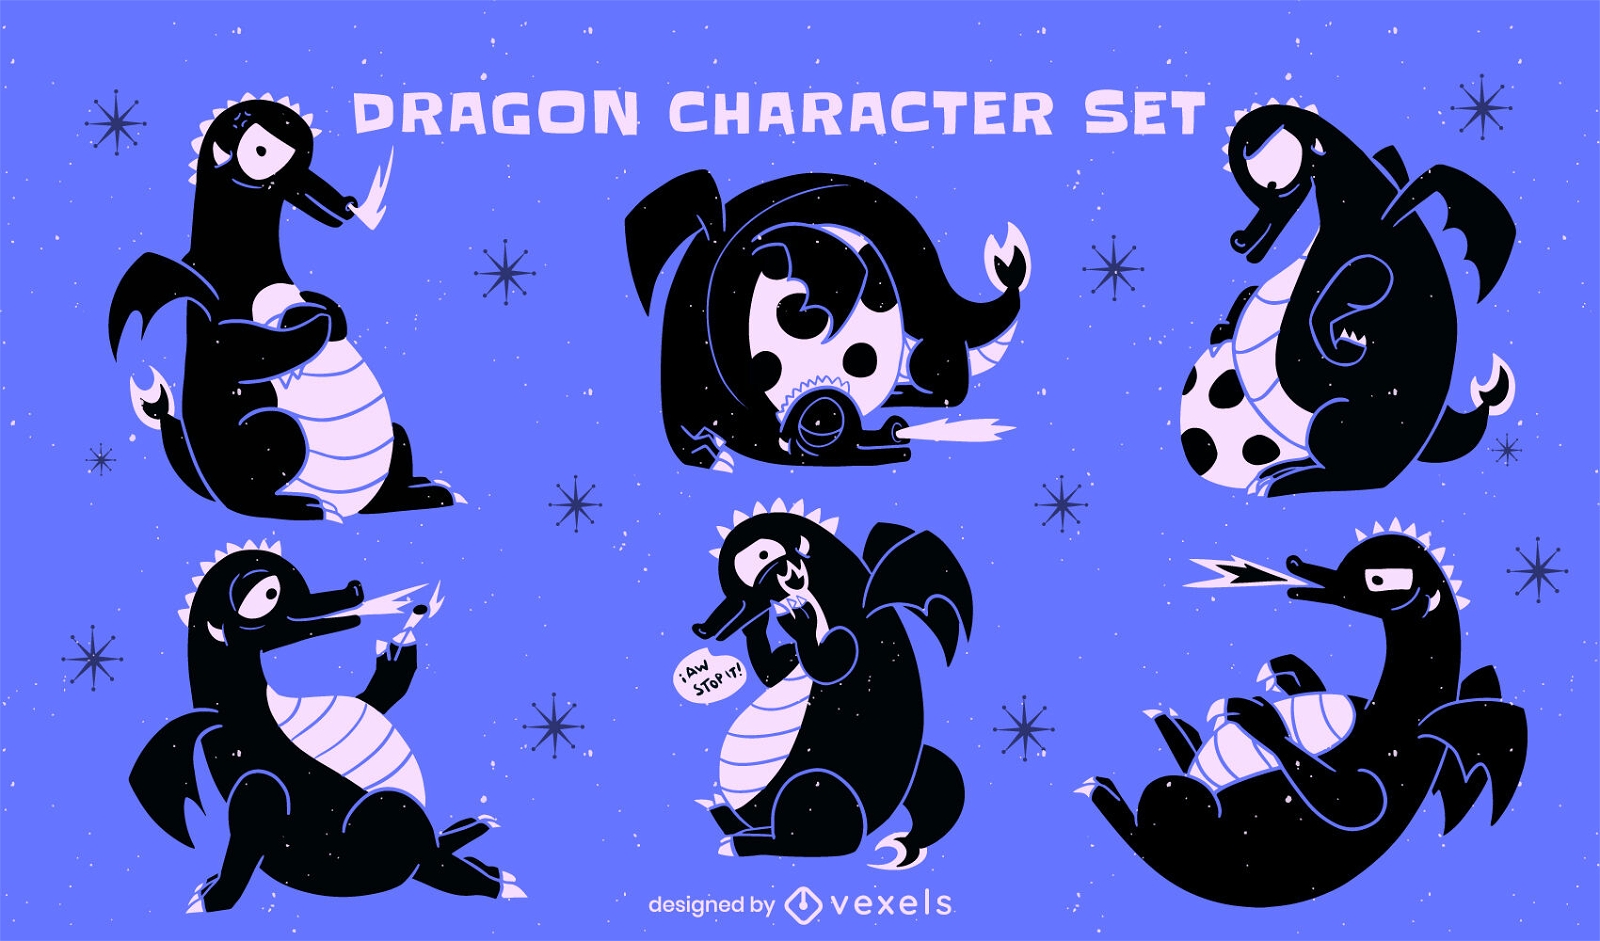 Cortar el conjunto de caracteres del dragón